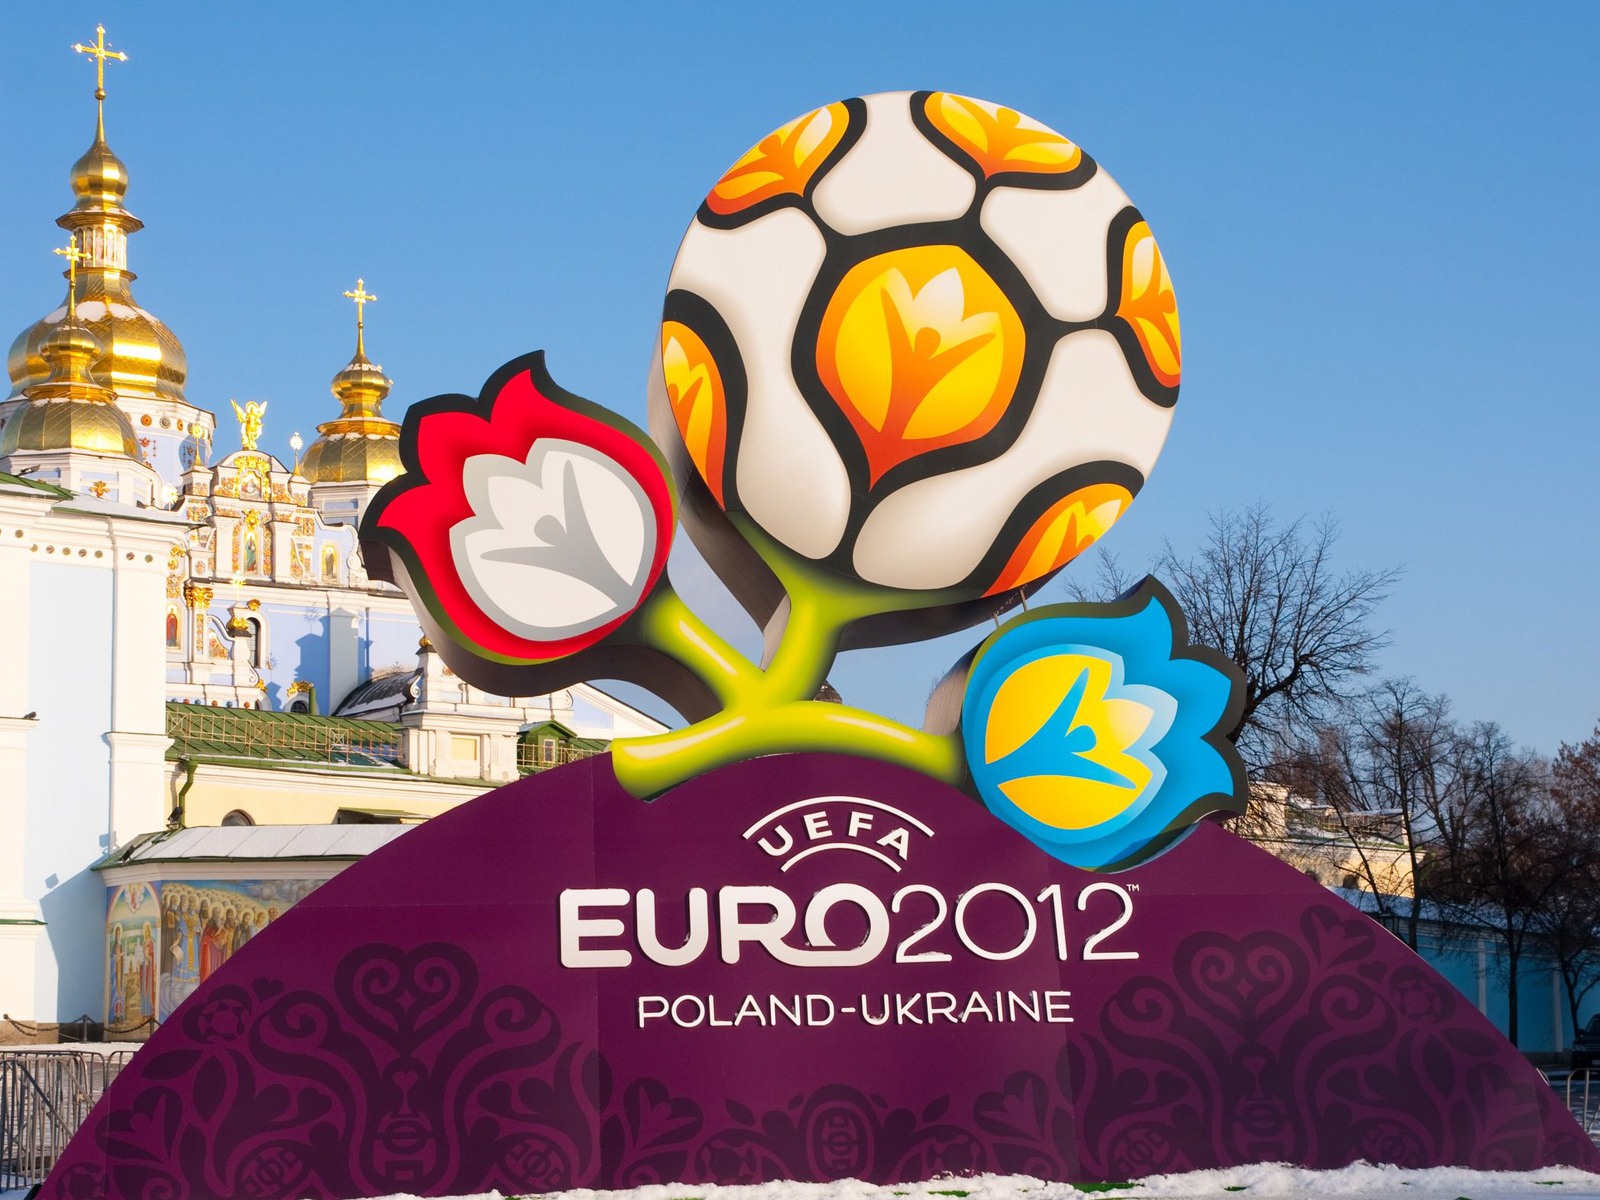 UEFA EURO 2012 欧洲足球锦标赛 高清壁纸(二)17 - 1600x1200